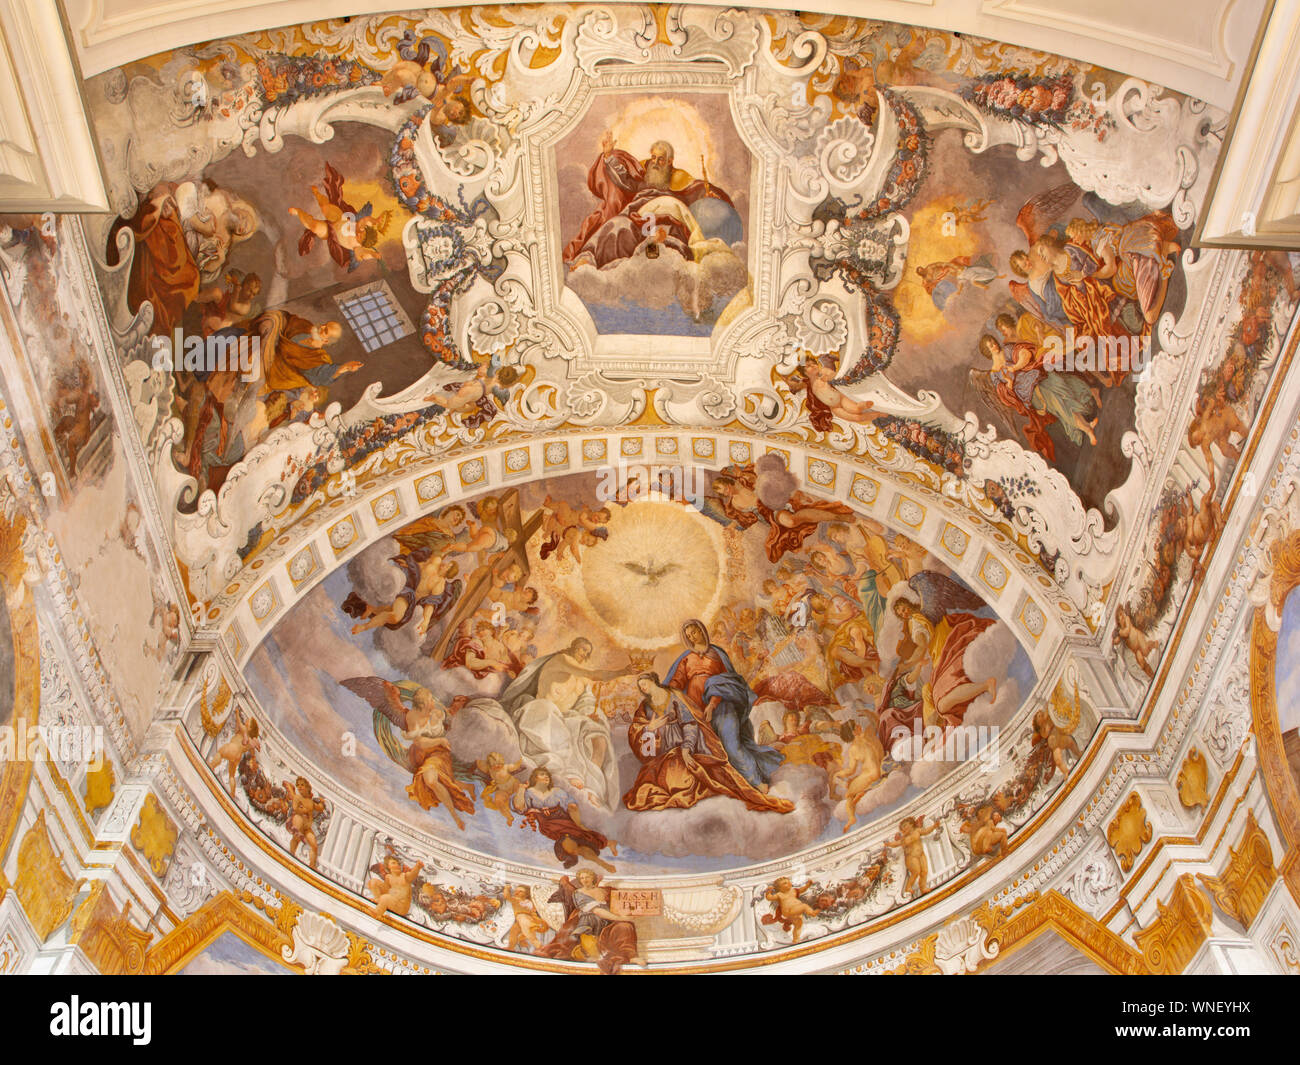 CATANIA, ITALY - APRIL 8, 2018: The glory of Santa Agata fresco from presbytery in church Chiesa di Sant'Agata al Borgo by Giovanni Lo Coco. Stock Photo